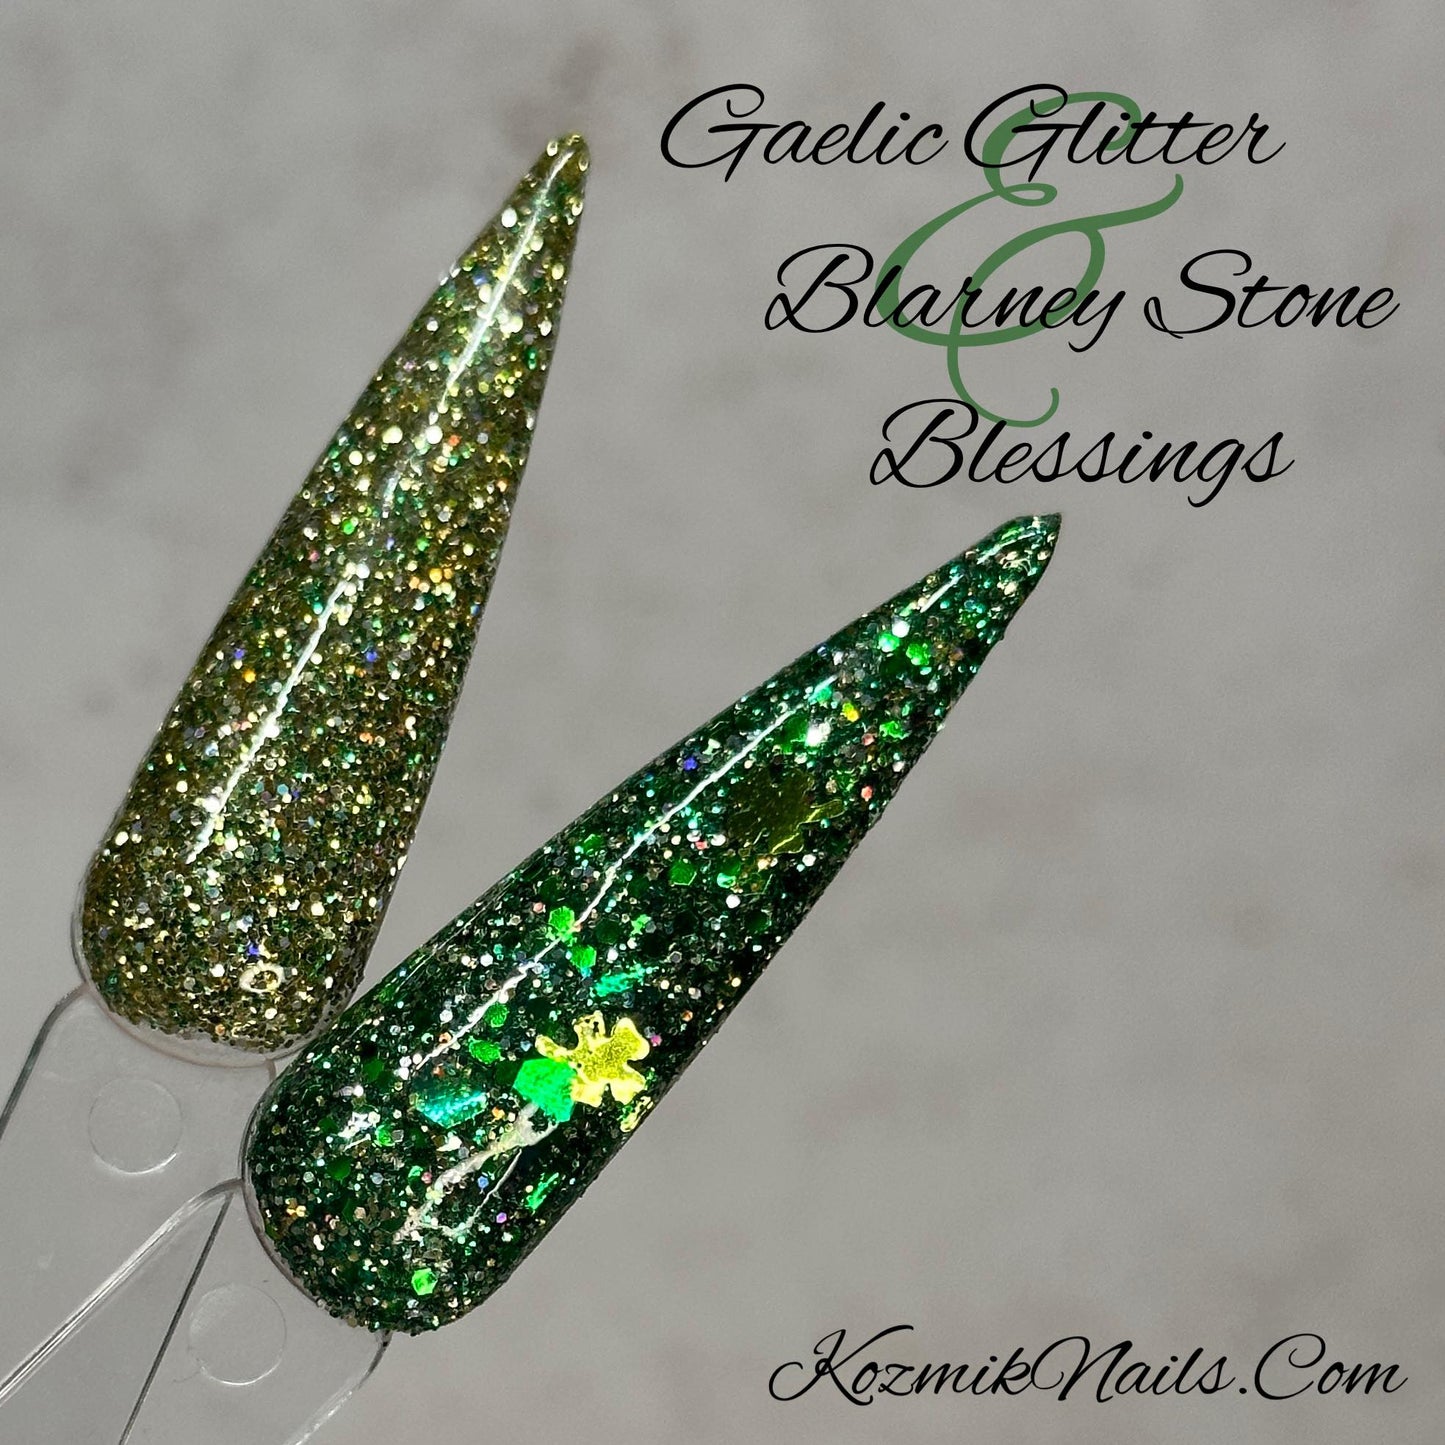 Gaelic Glitter / Blarney Stone Blessings!